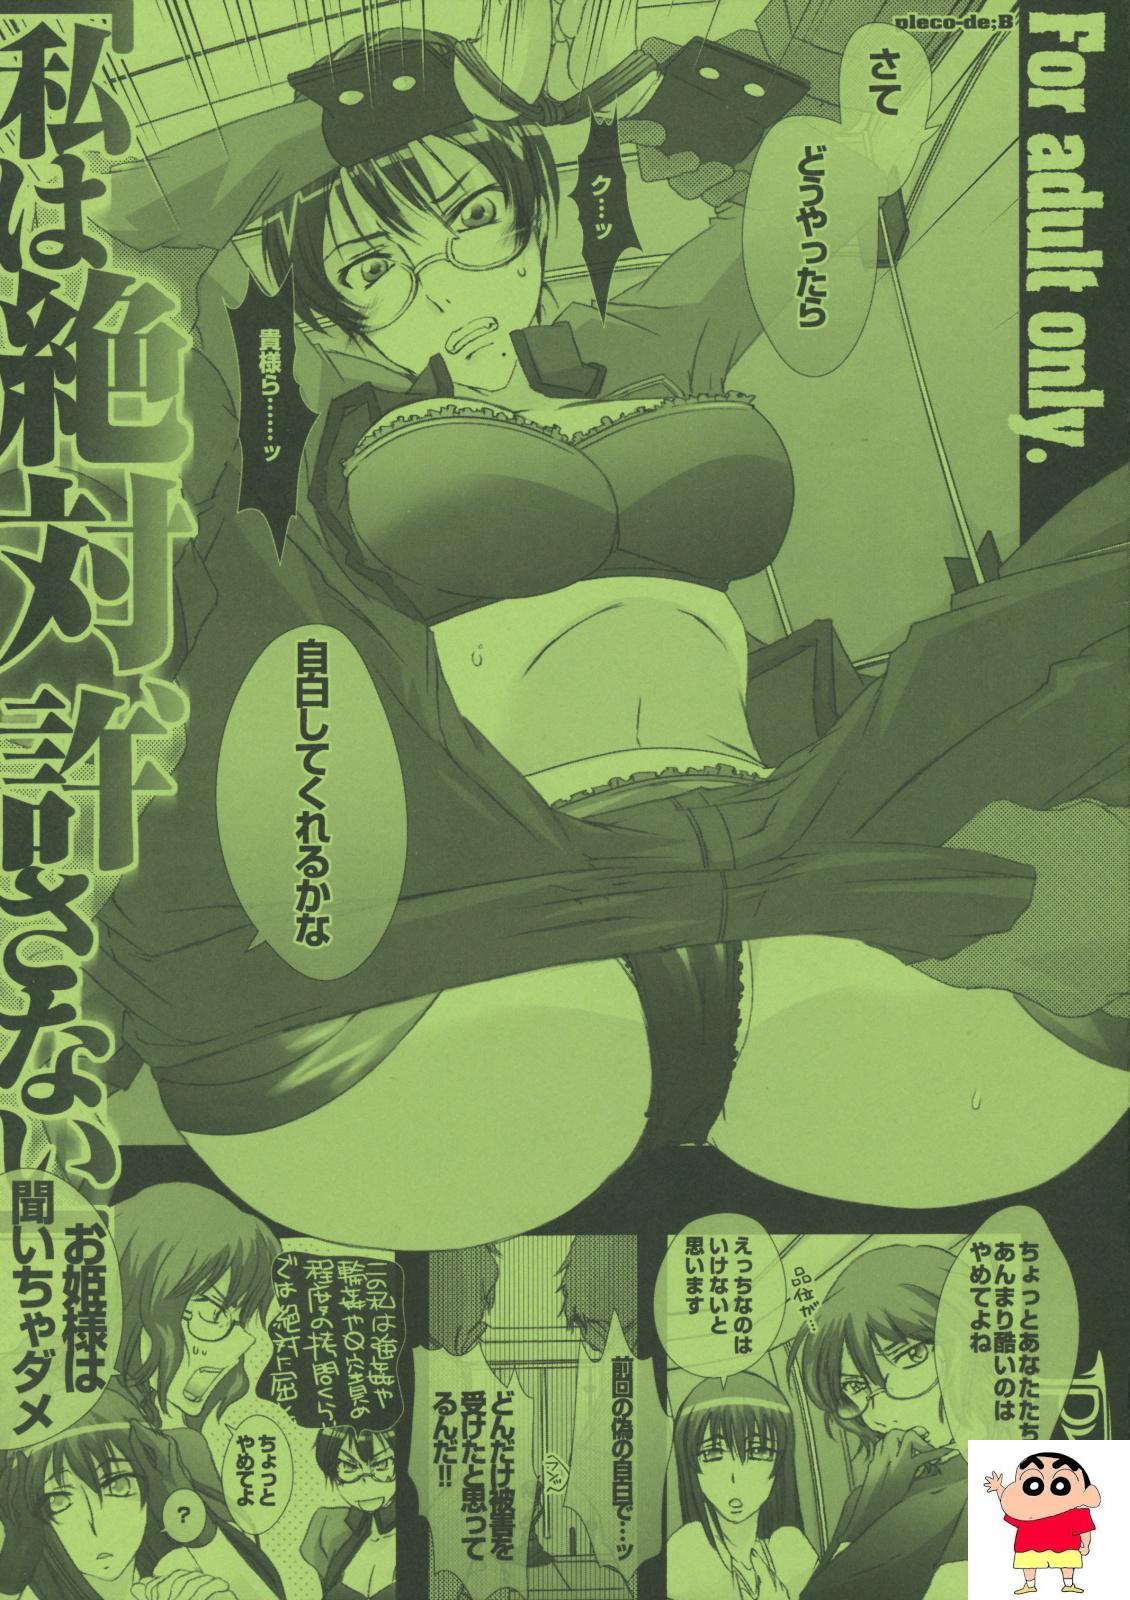 【Fatestay nightエロ漫画】士郎と2人きりになったライダーは一日中イチャラブセックスを